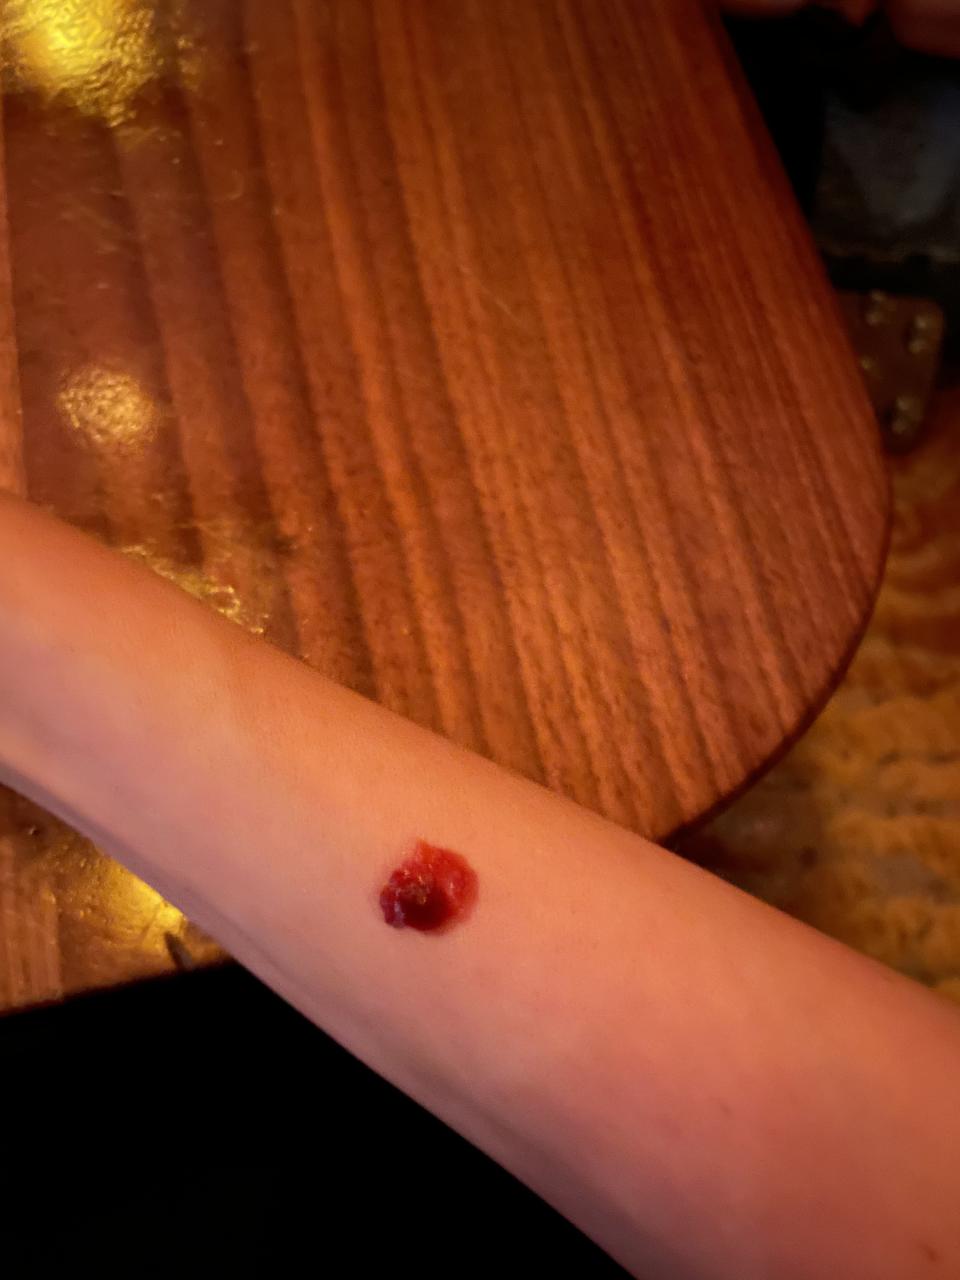 Lara's arm with ketchup